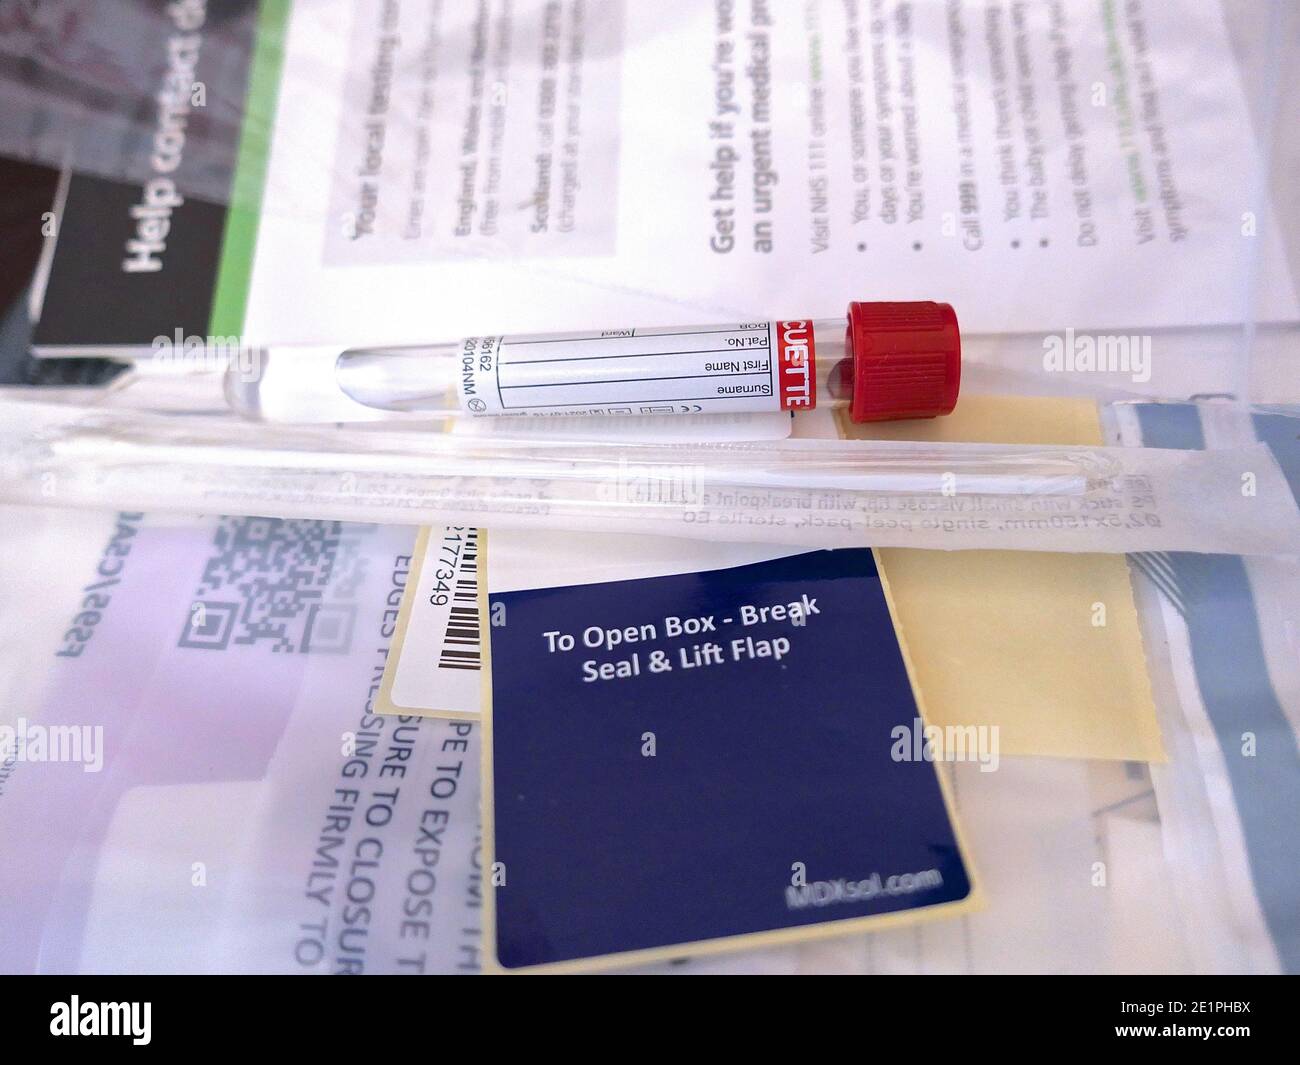 Obtenez un test NHS gratuit pour vérifier si vous avez le coronavirus - GOV.UK . Vous ne pouvez obtenir un test gratuit que si vous avez des symptômes comme une toux sèche continue, la fièvre perte de goût ou d'odeur , ou vous avez été demandé par le conseil local ou si vous prenez part à un projet pilote du gouvernement . Vous pouvez également obtenir un test pour quelqu'un avec qui vous vivez s'ils ont les symptômes ... Banque D'Images